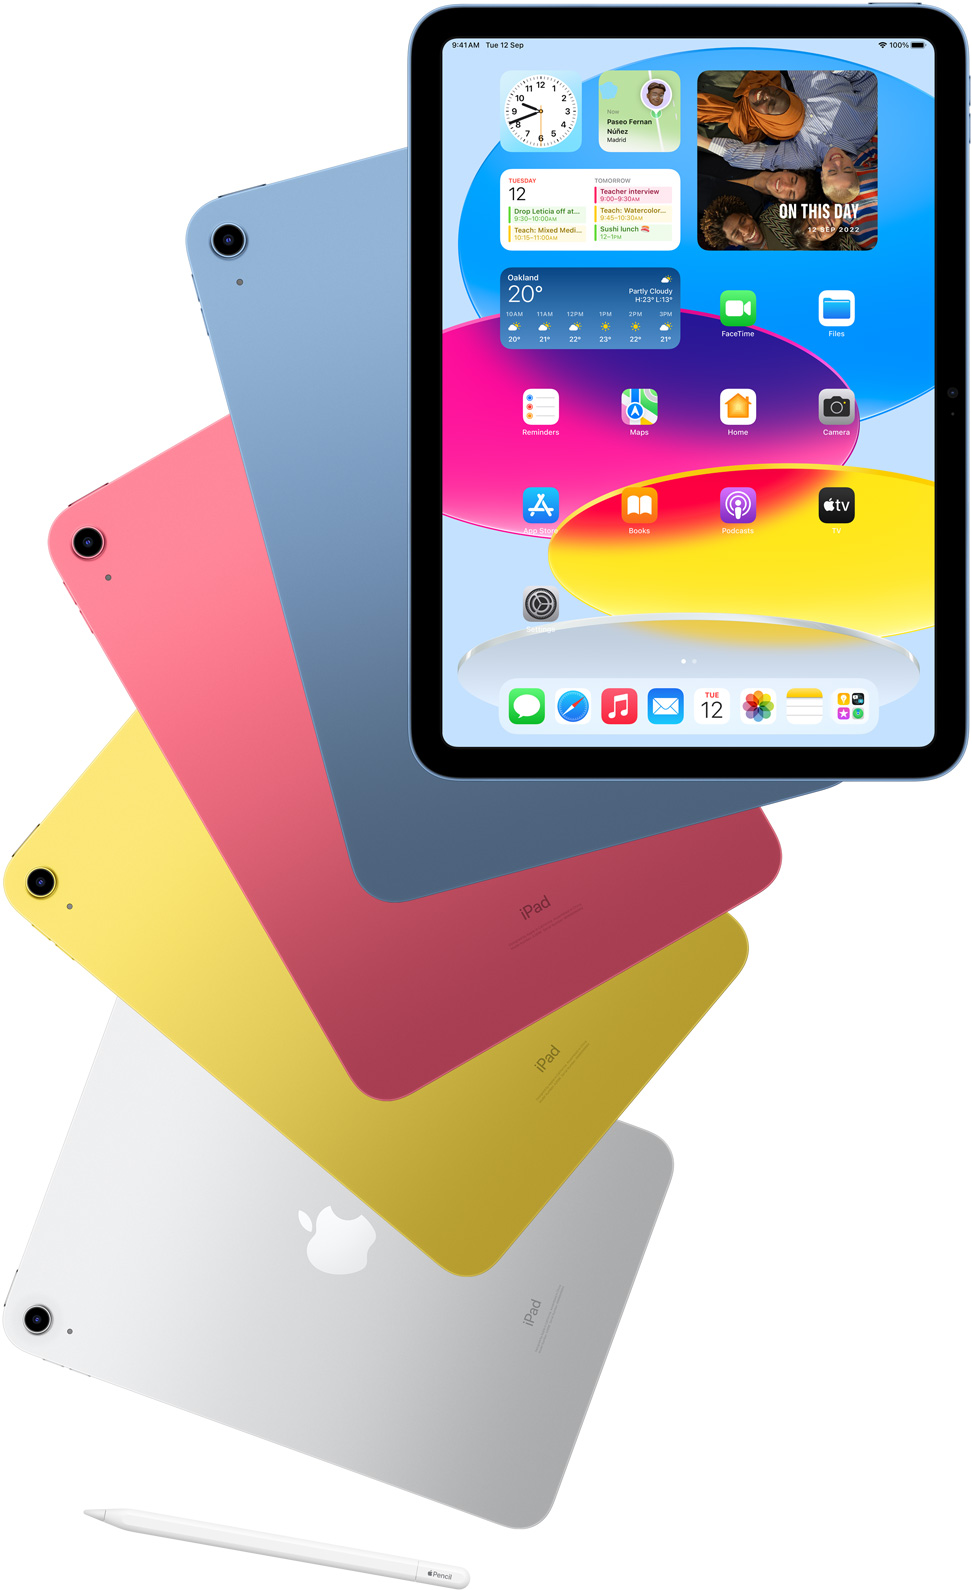 iPad 展示主畫面的正面圖，並與藍色、粉紅色、黃色和銀色 iPad 的機背排在一起。在這幾款排列好的 iPad 附近，同時展示 Apple Pencil。